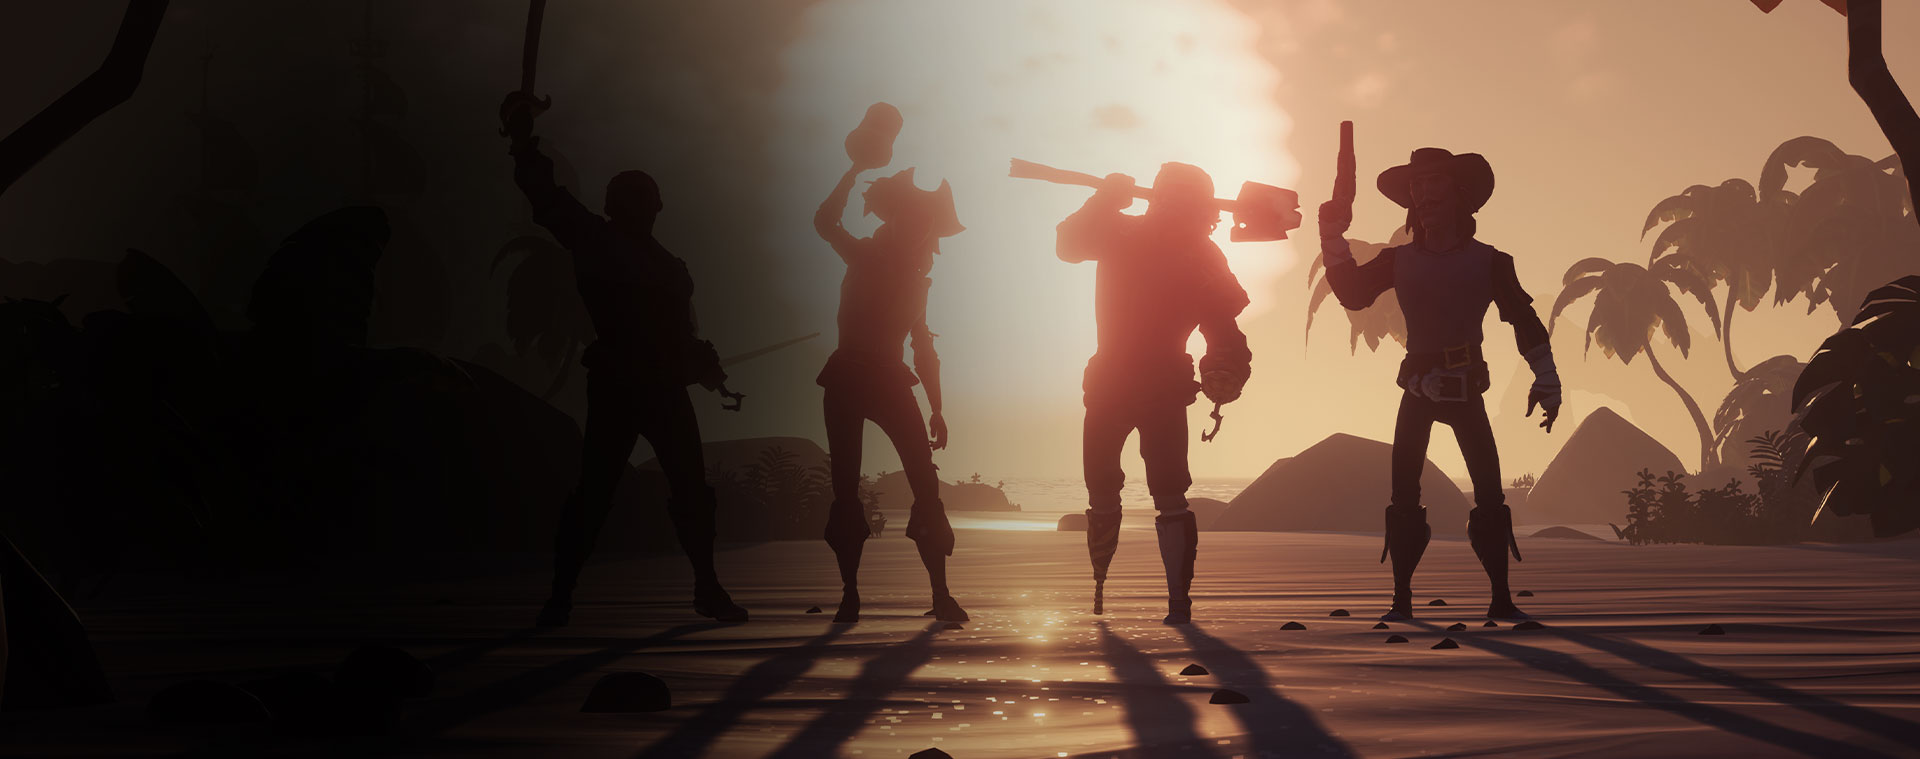 Fire karakterer fra Sea of Thieves poserer foran en solnedgang